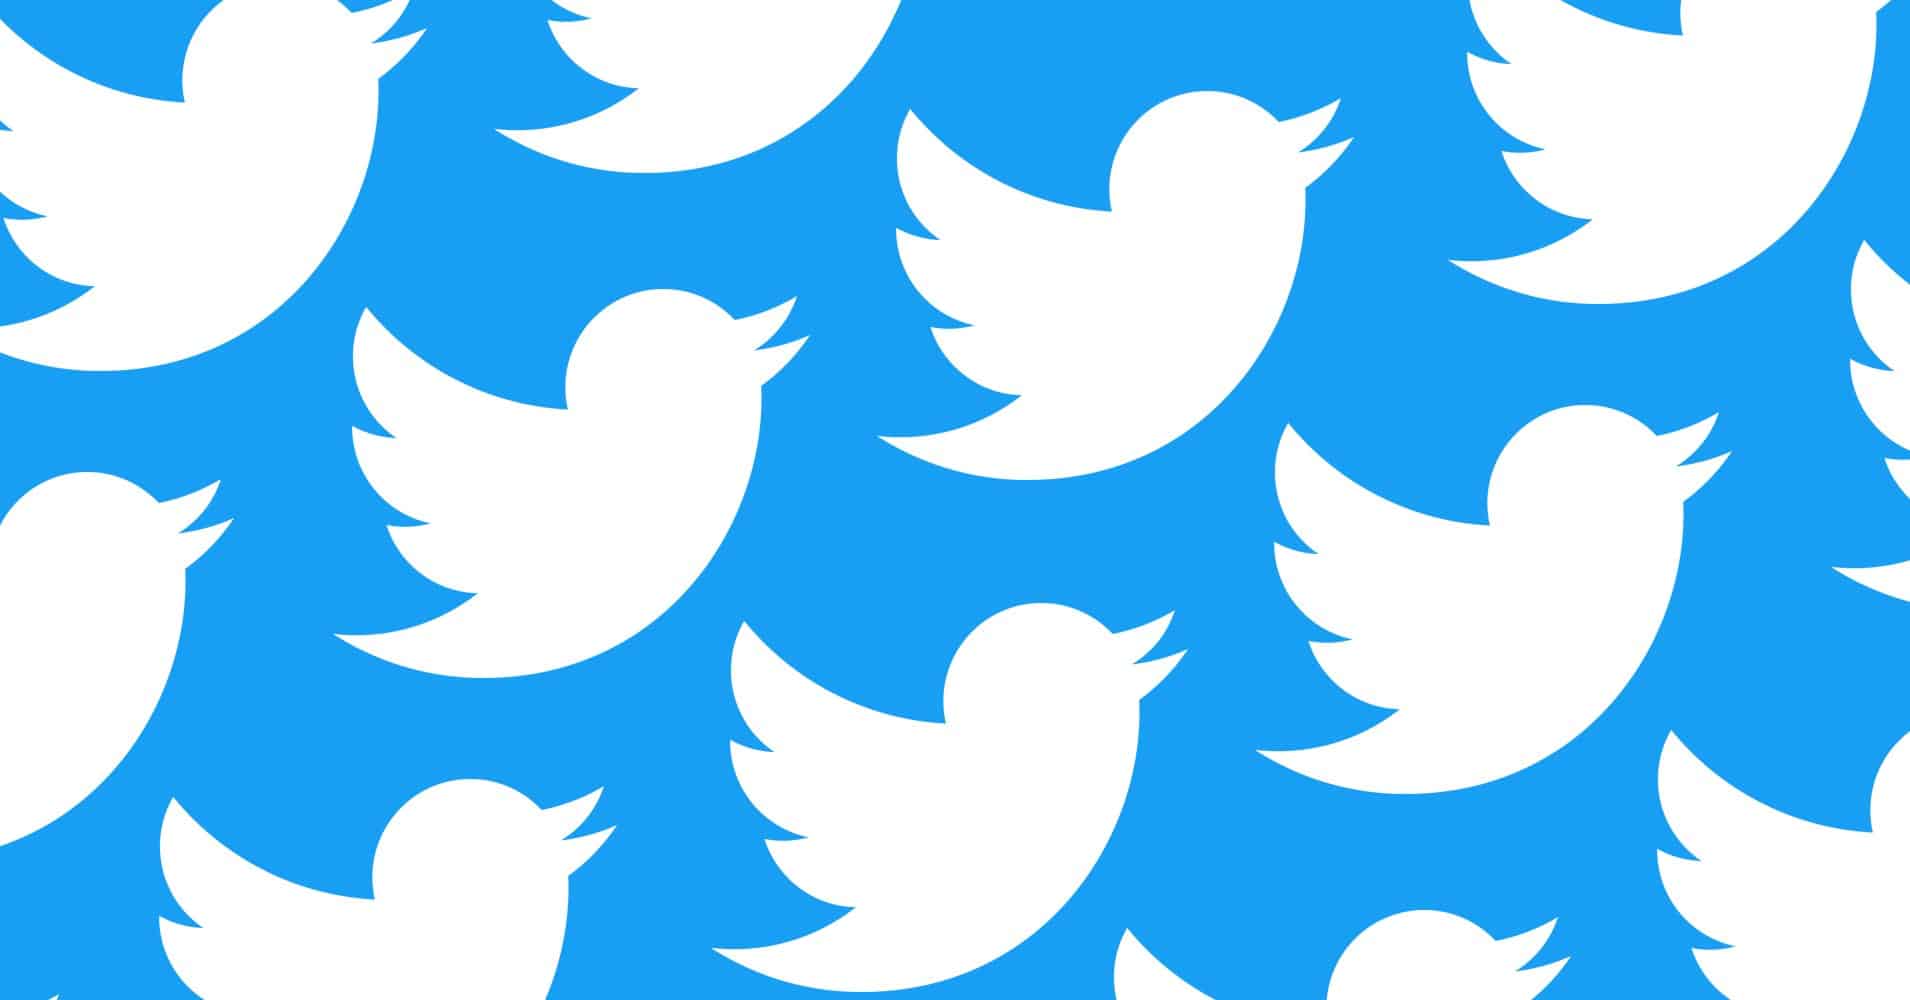 Le logo de Twitter en mosaïque sur fond bleu